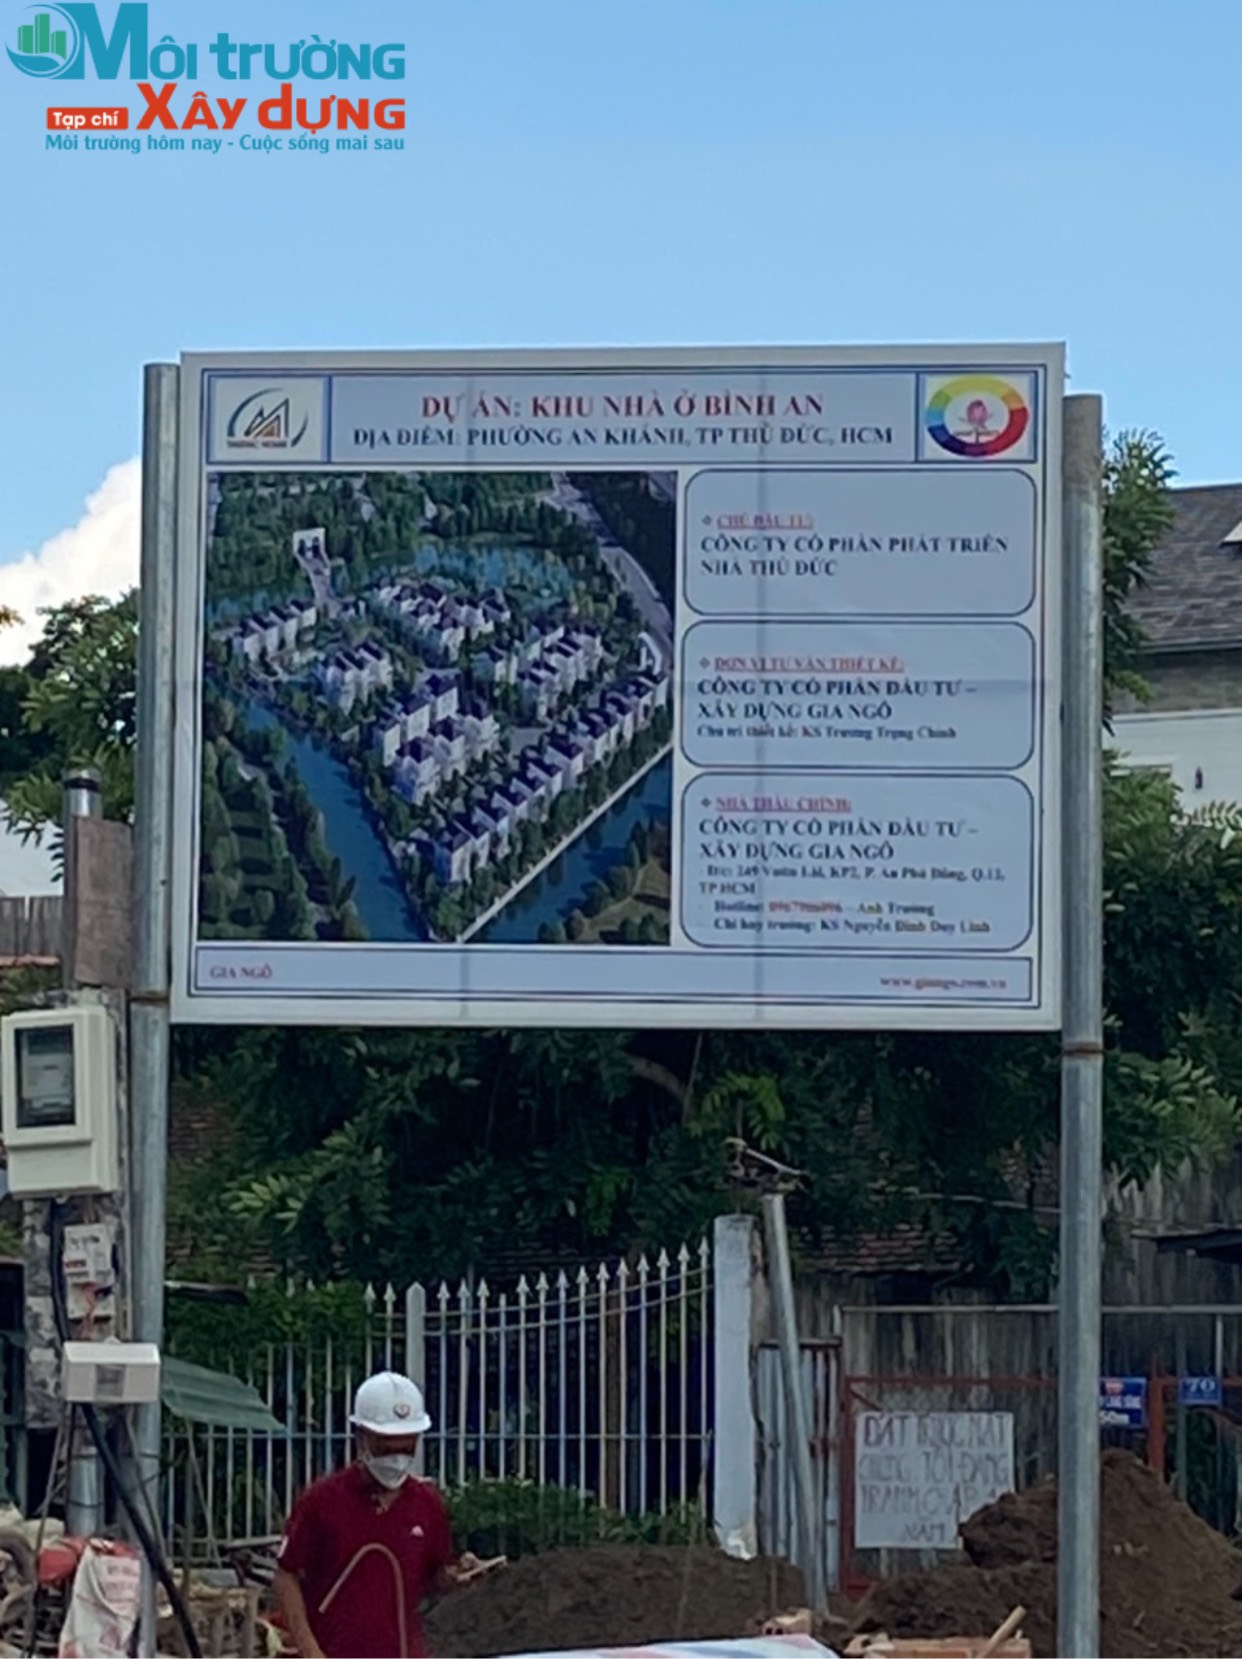 Thủ Đức – TP.Hồ Chí Minh: Triển khai rầm rộ Dự án khu nhà ở Bình An, người dân chính thức bị bịt lối đi chính